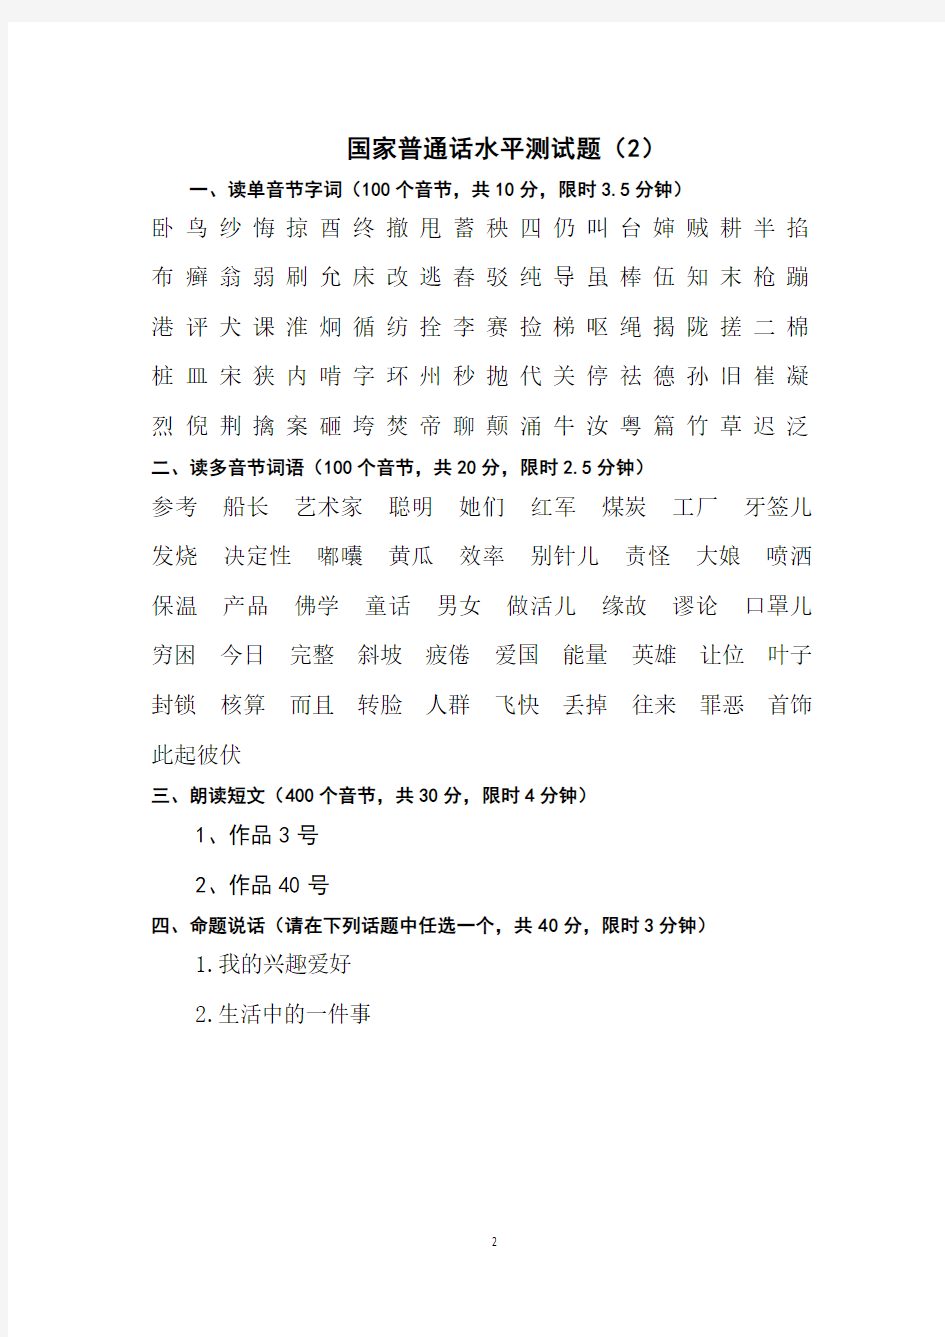 普通话水平测试练习(1——10套)